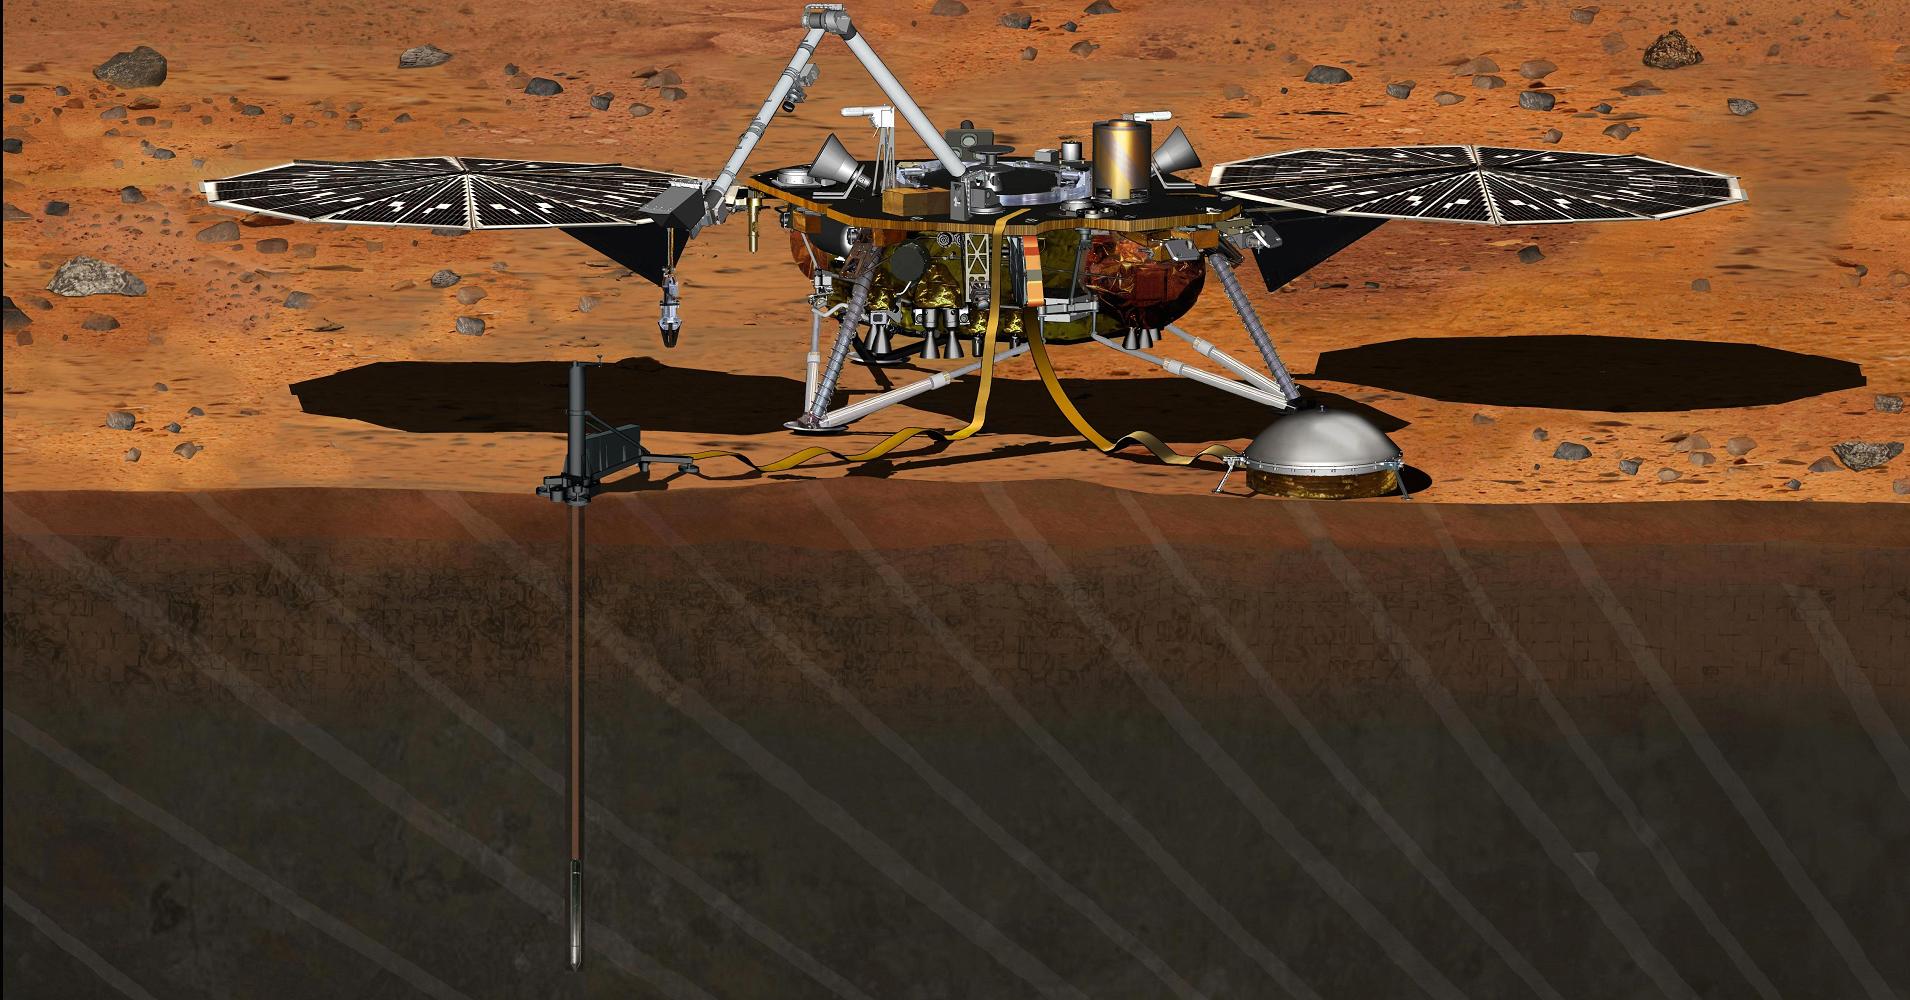 अंतर्दृष्टि मॉड्यूल के सफलतापूर्वक मंगल ग्रह के लिए चला गया